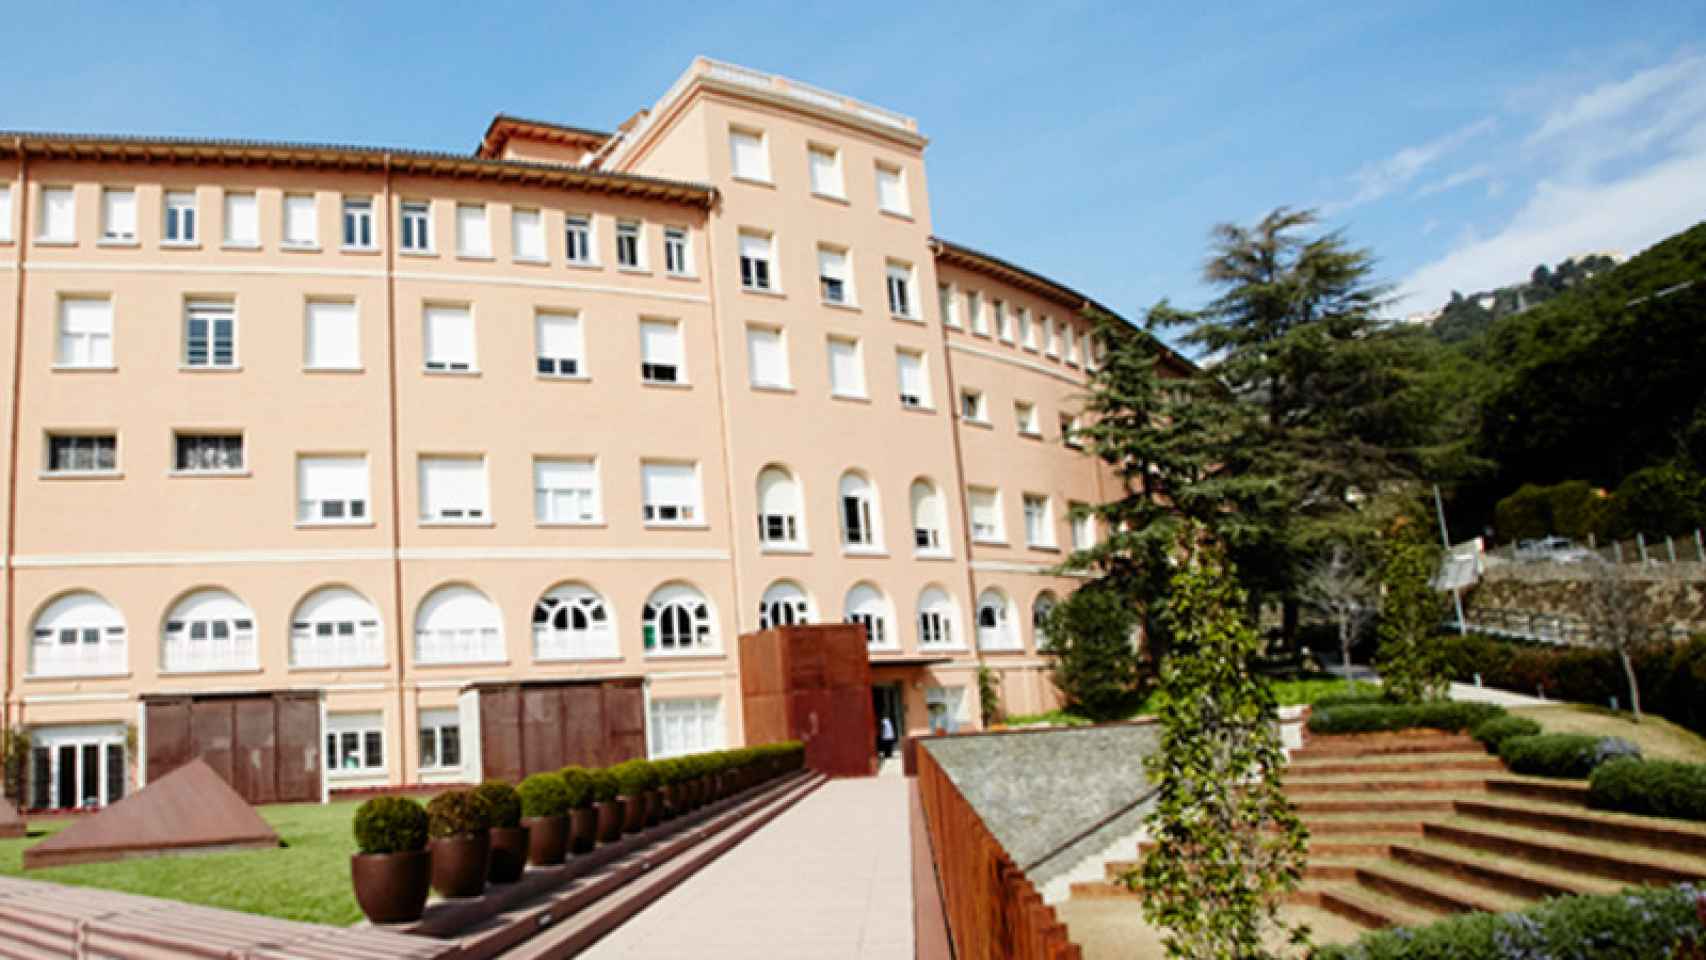 Fachada del colegio Montserrat, en Barcelona | Colegio Montserrat